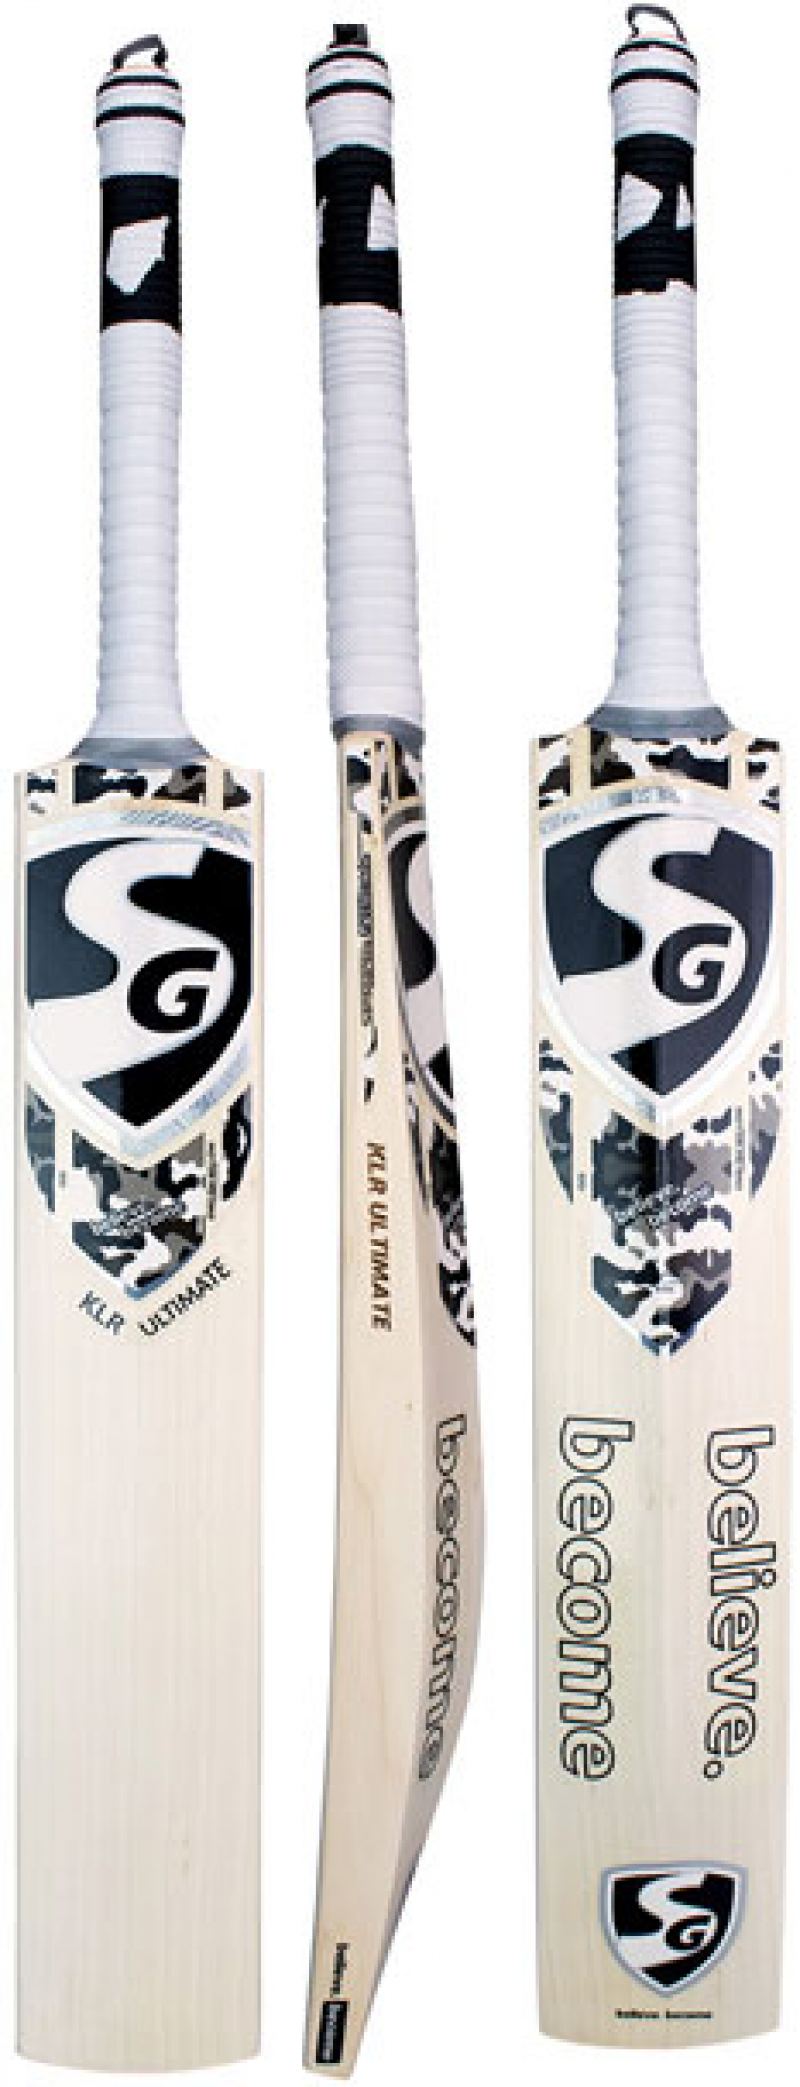 SG KLR Ultimate Cricket Bat